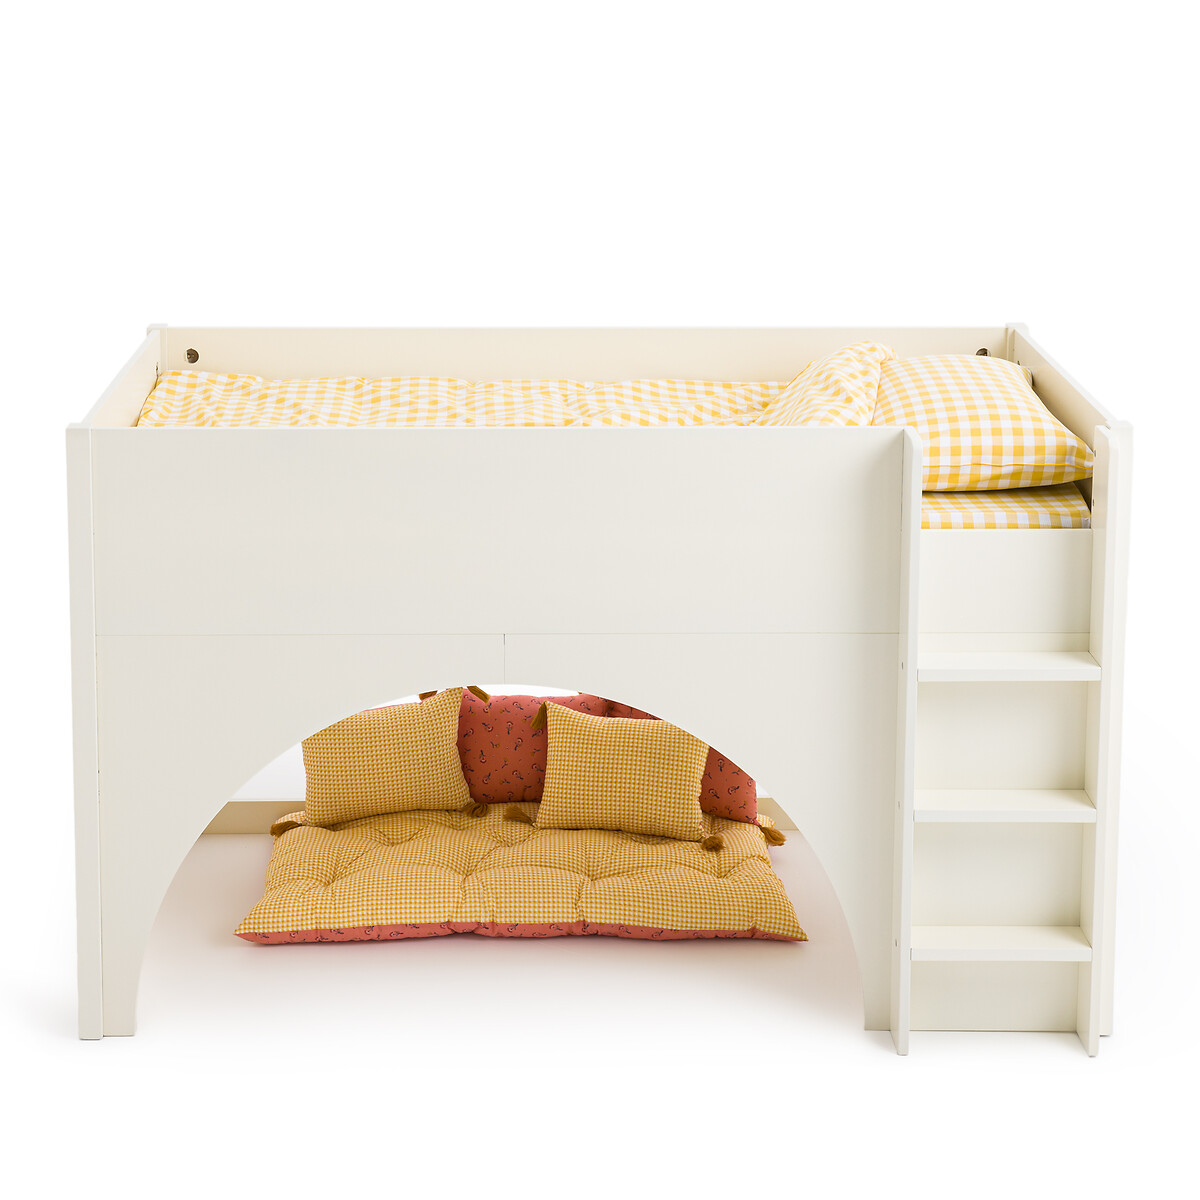 Кровать средней высоты детская Arch 90 x 190 см белый диван кровать детская jimi 90 x 190 см белый